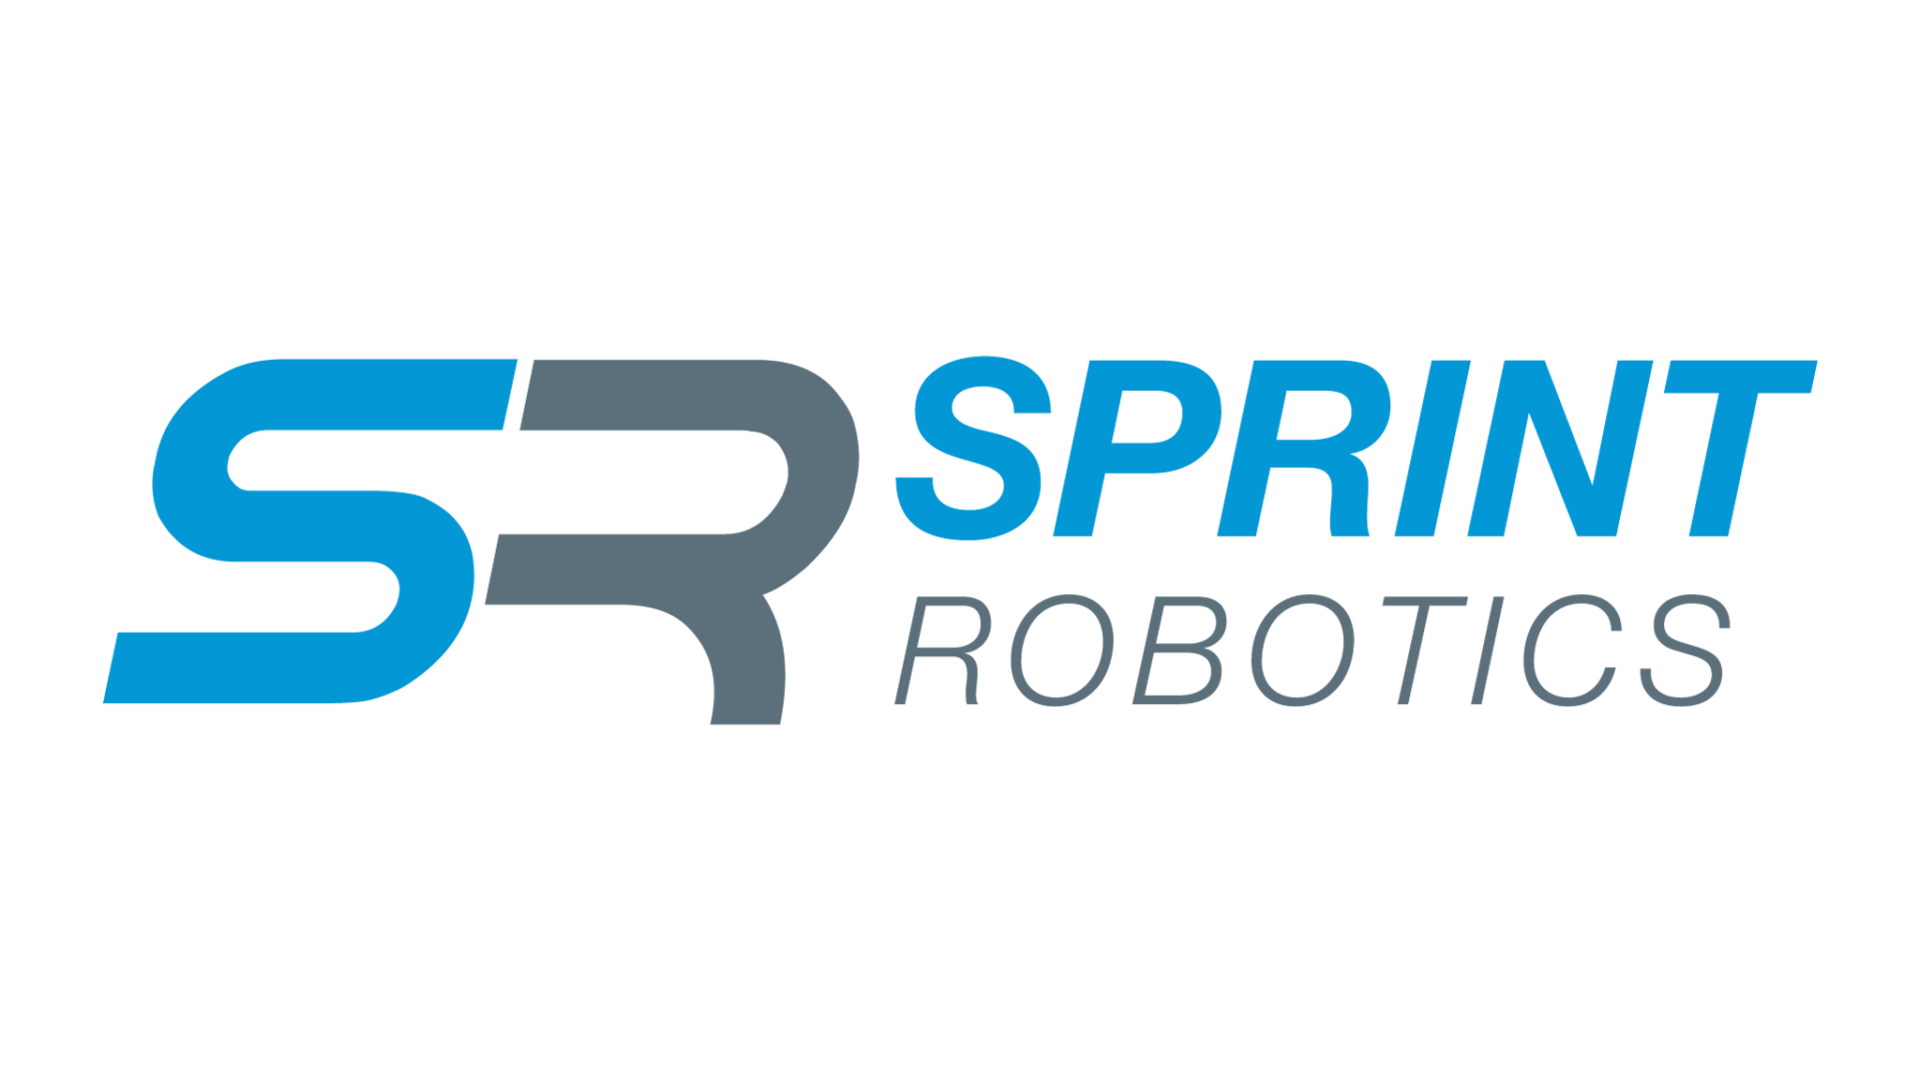 Sprint robotics